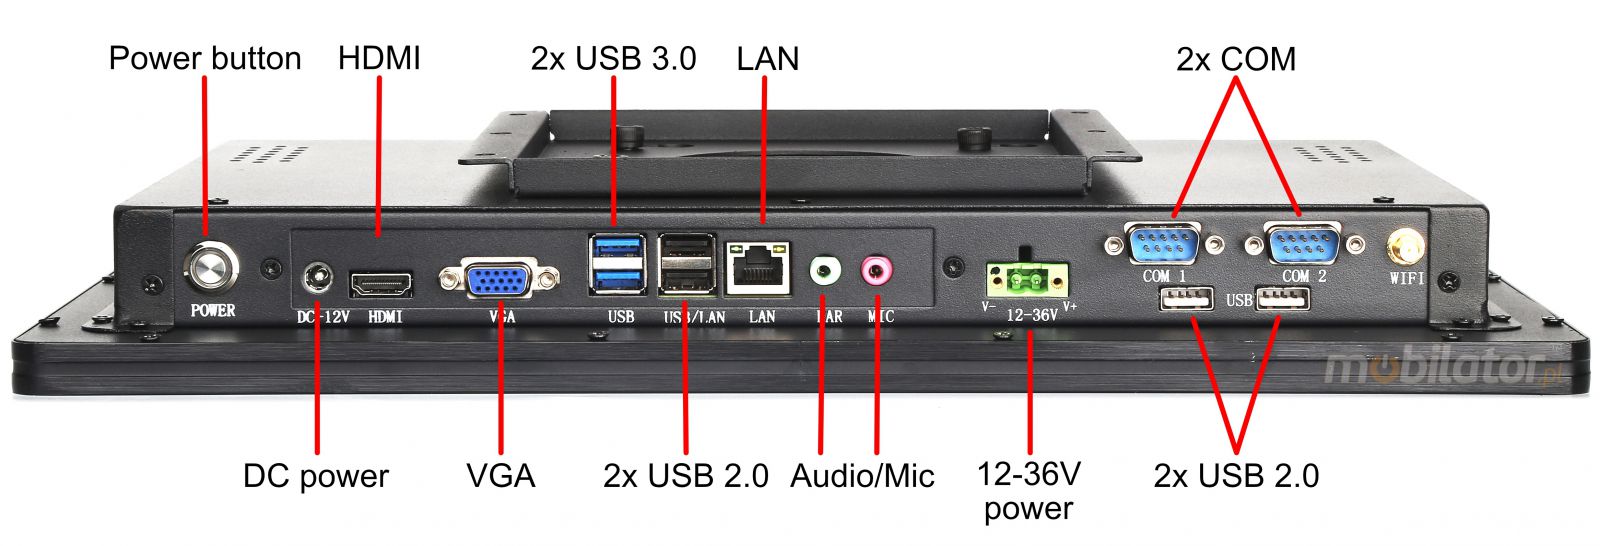 BiBOX-215PC1 (i5-4200U) v.4 - 21,5 cali, IP65, metalowy wzmocniony panel - przemysowy komputer dotykowy - rozszerzenie SSD, 8GB RAM